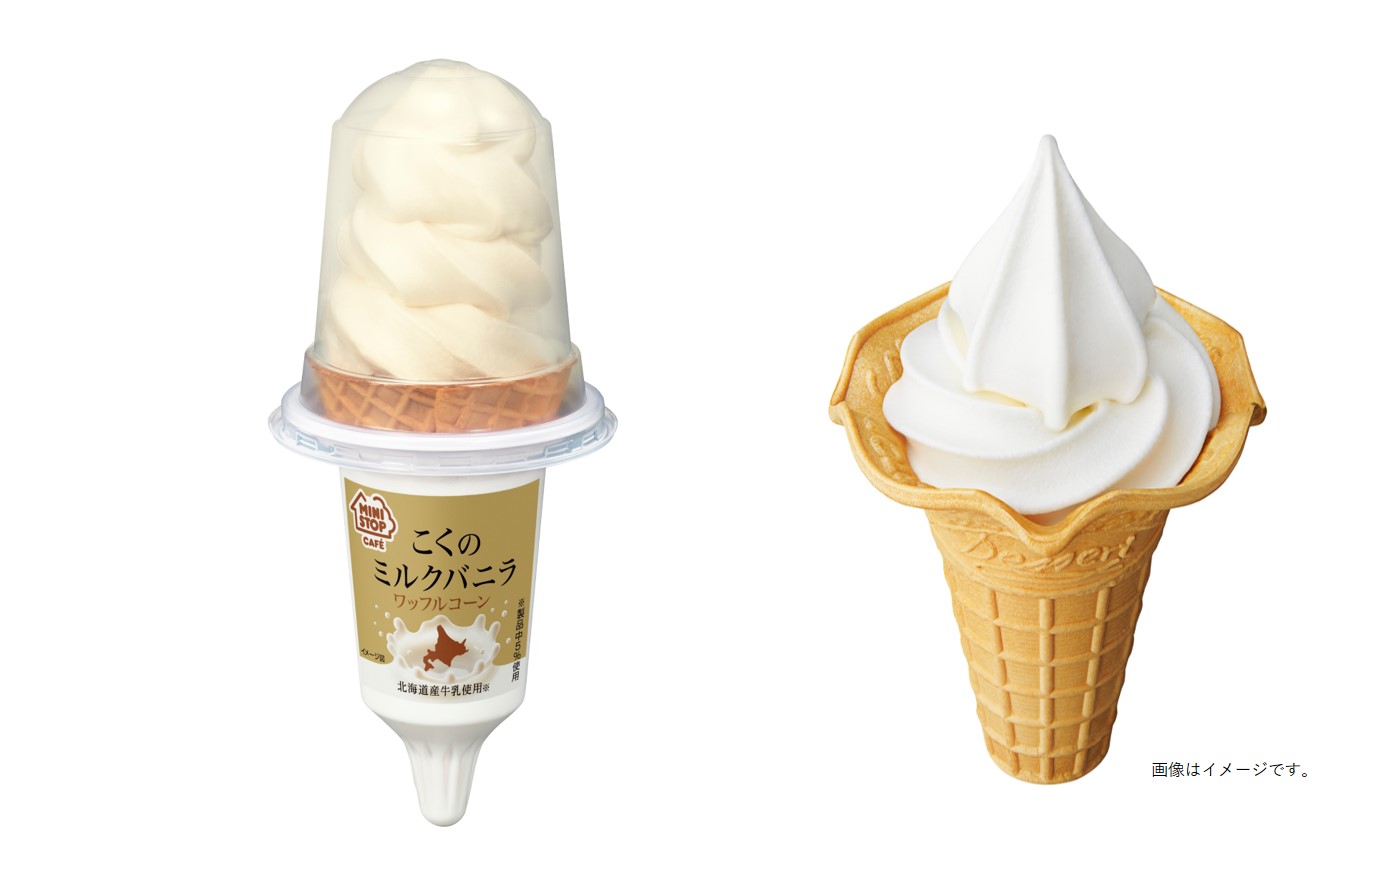 【ミニストップ】オリジナルアイスクリーム「ワッフルコーン こくのミルクバニラ」4/19(火)発売🐮🍦🤍💘